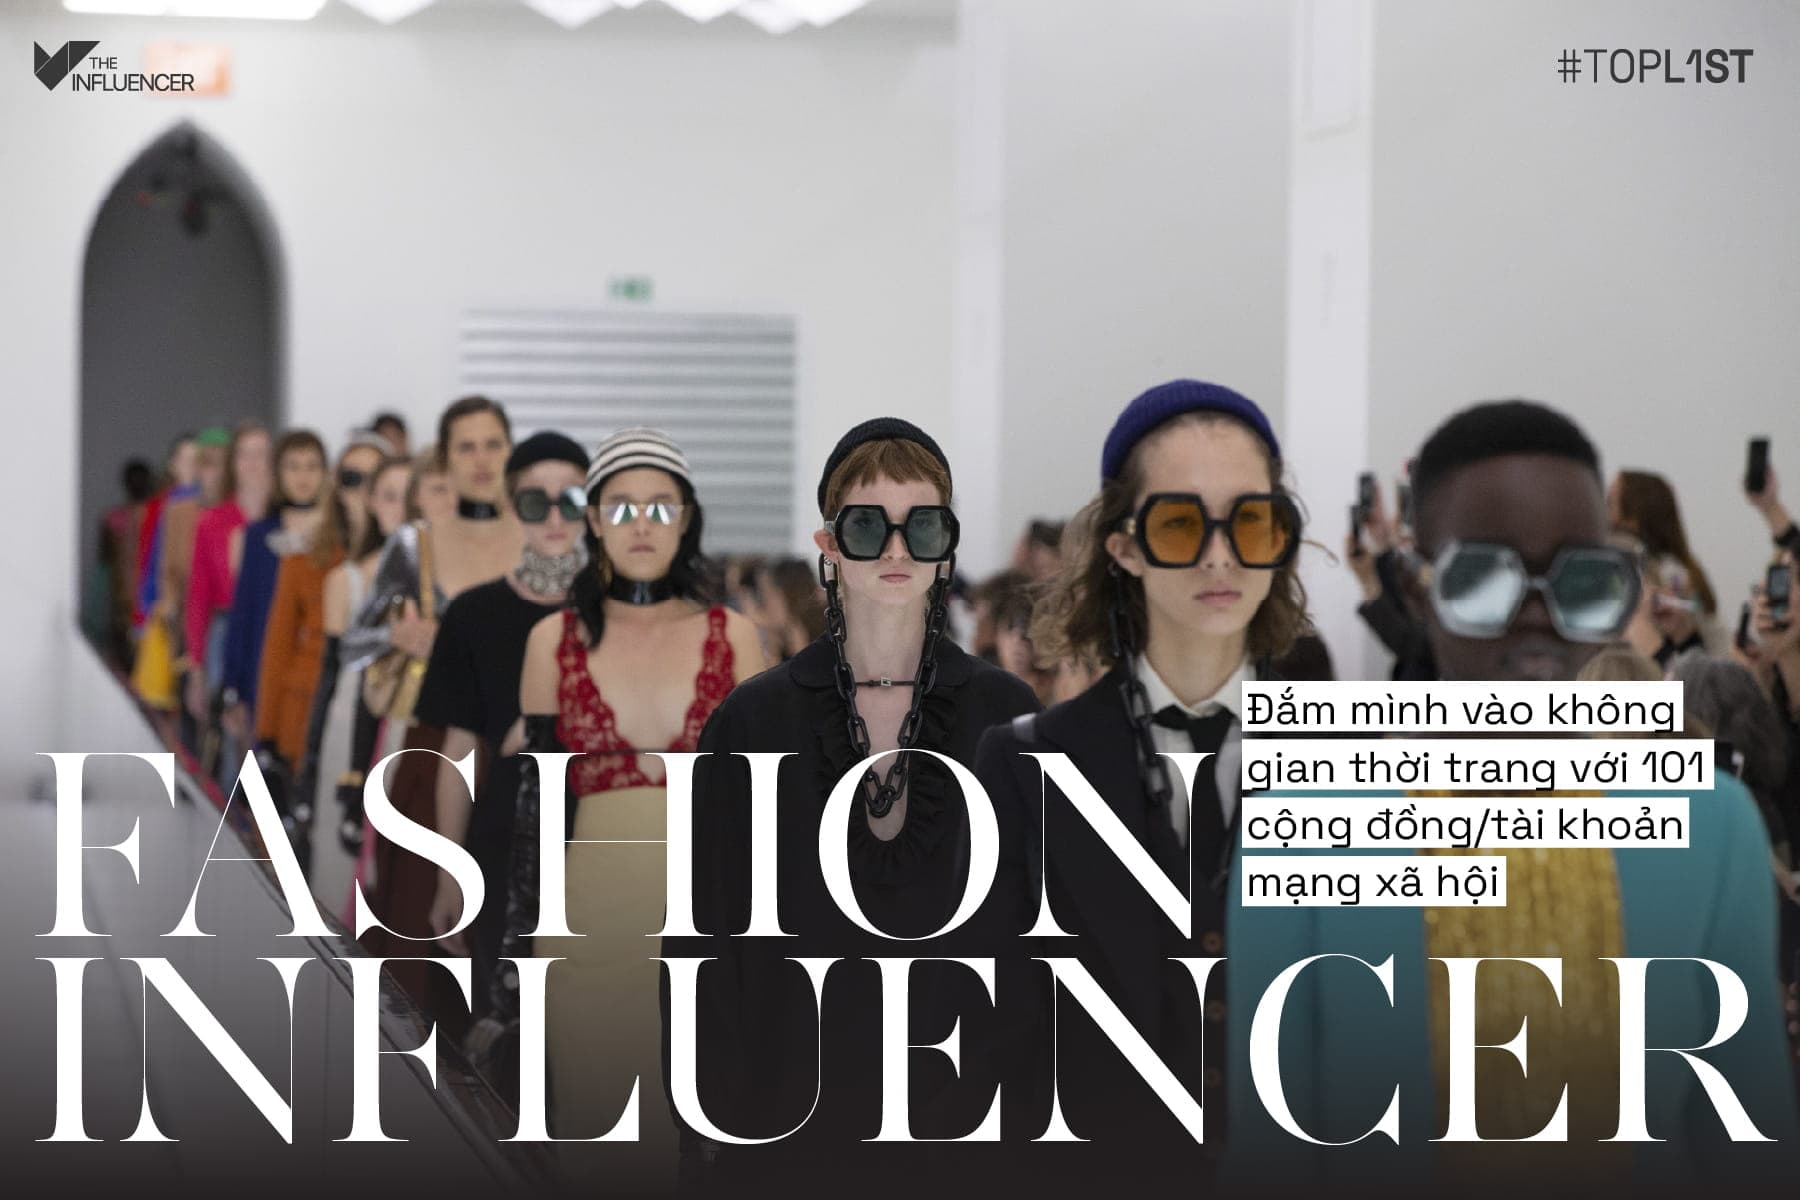 Fashion Influencer - Đắm mình vào không gian thời trang với 101 cộng đồng/tài khoản mạng xã hội